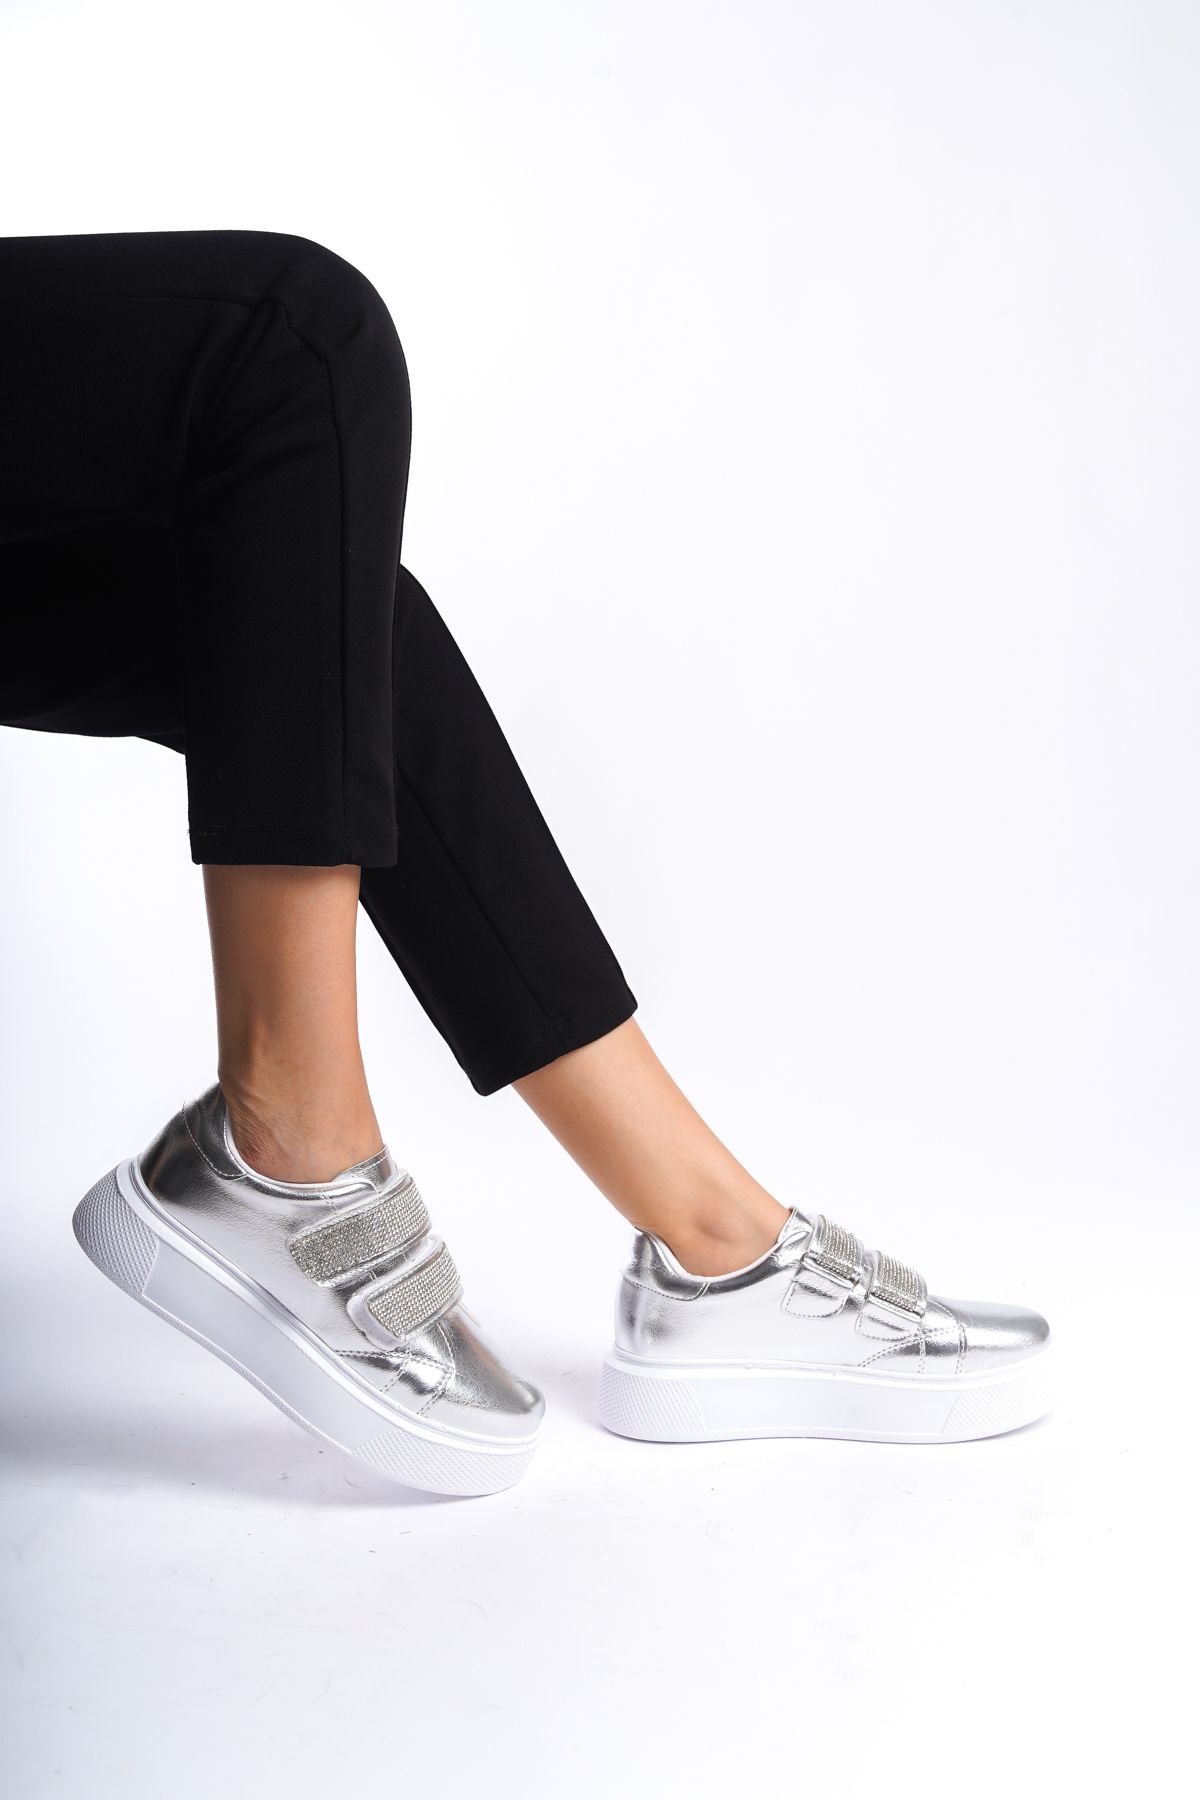 BAKGİY Gümüş Kadın Çift Cırtlı Taşlı Sneaker BG1025-101-0010